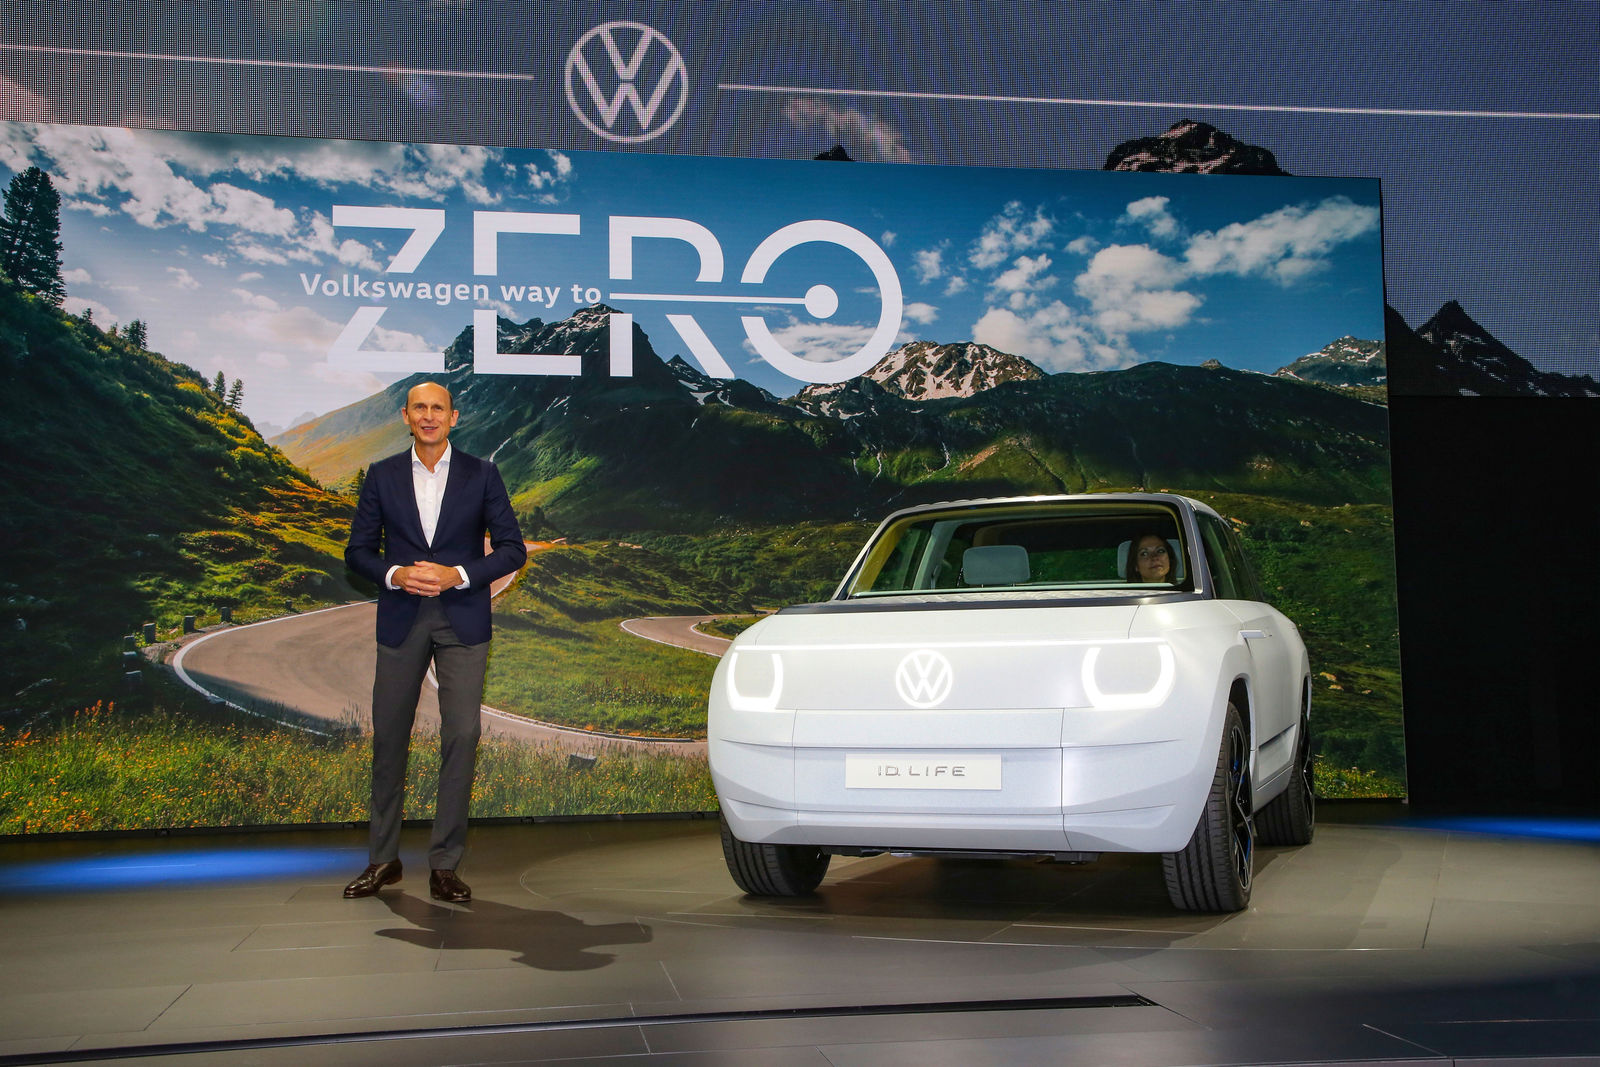 IAA MOBILITY 2021 – Volkswagen Pressekonferenz